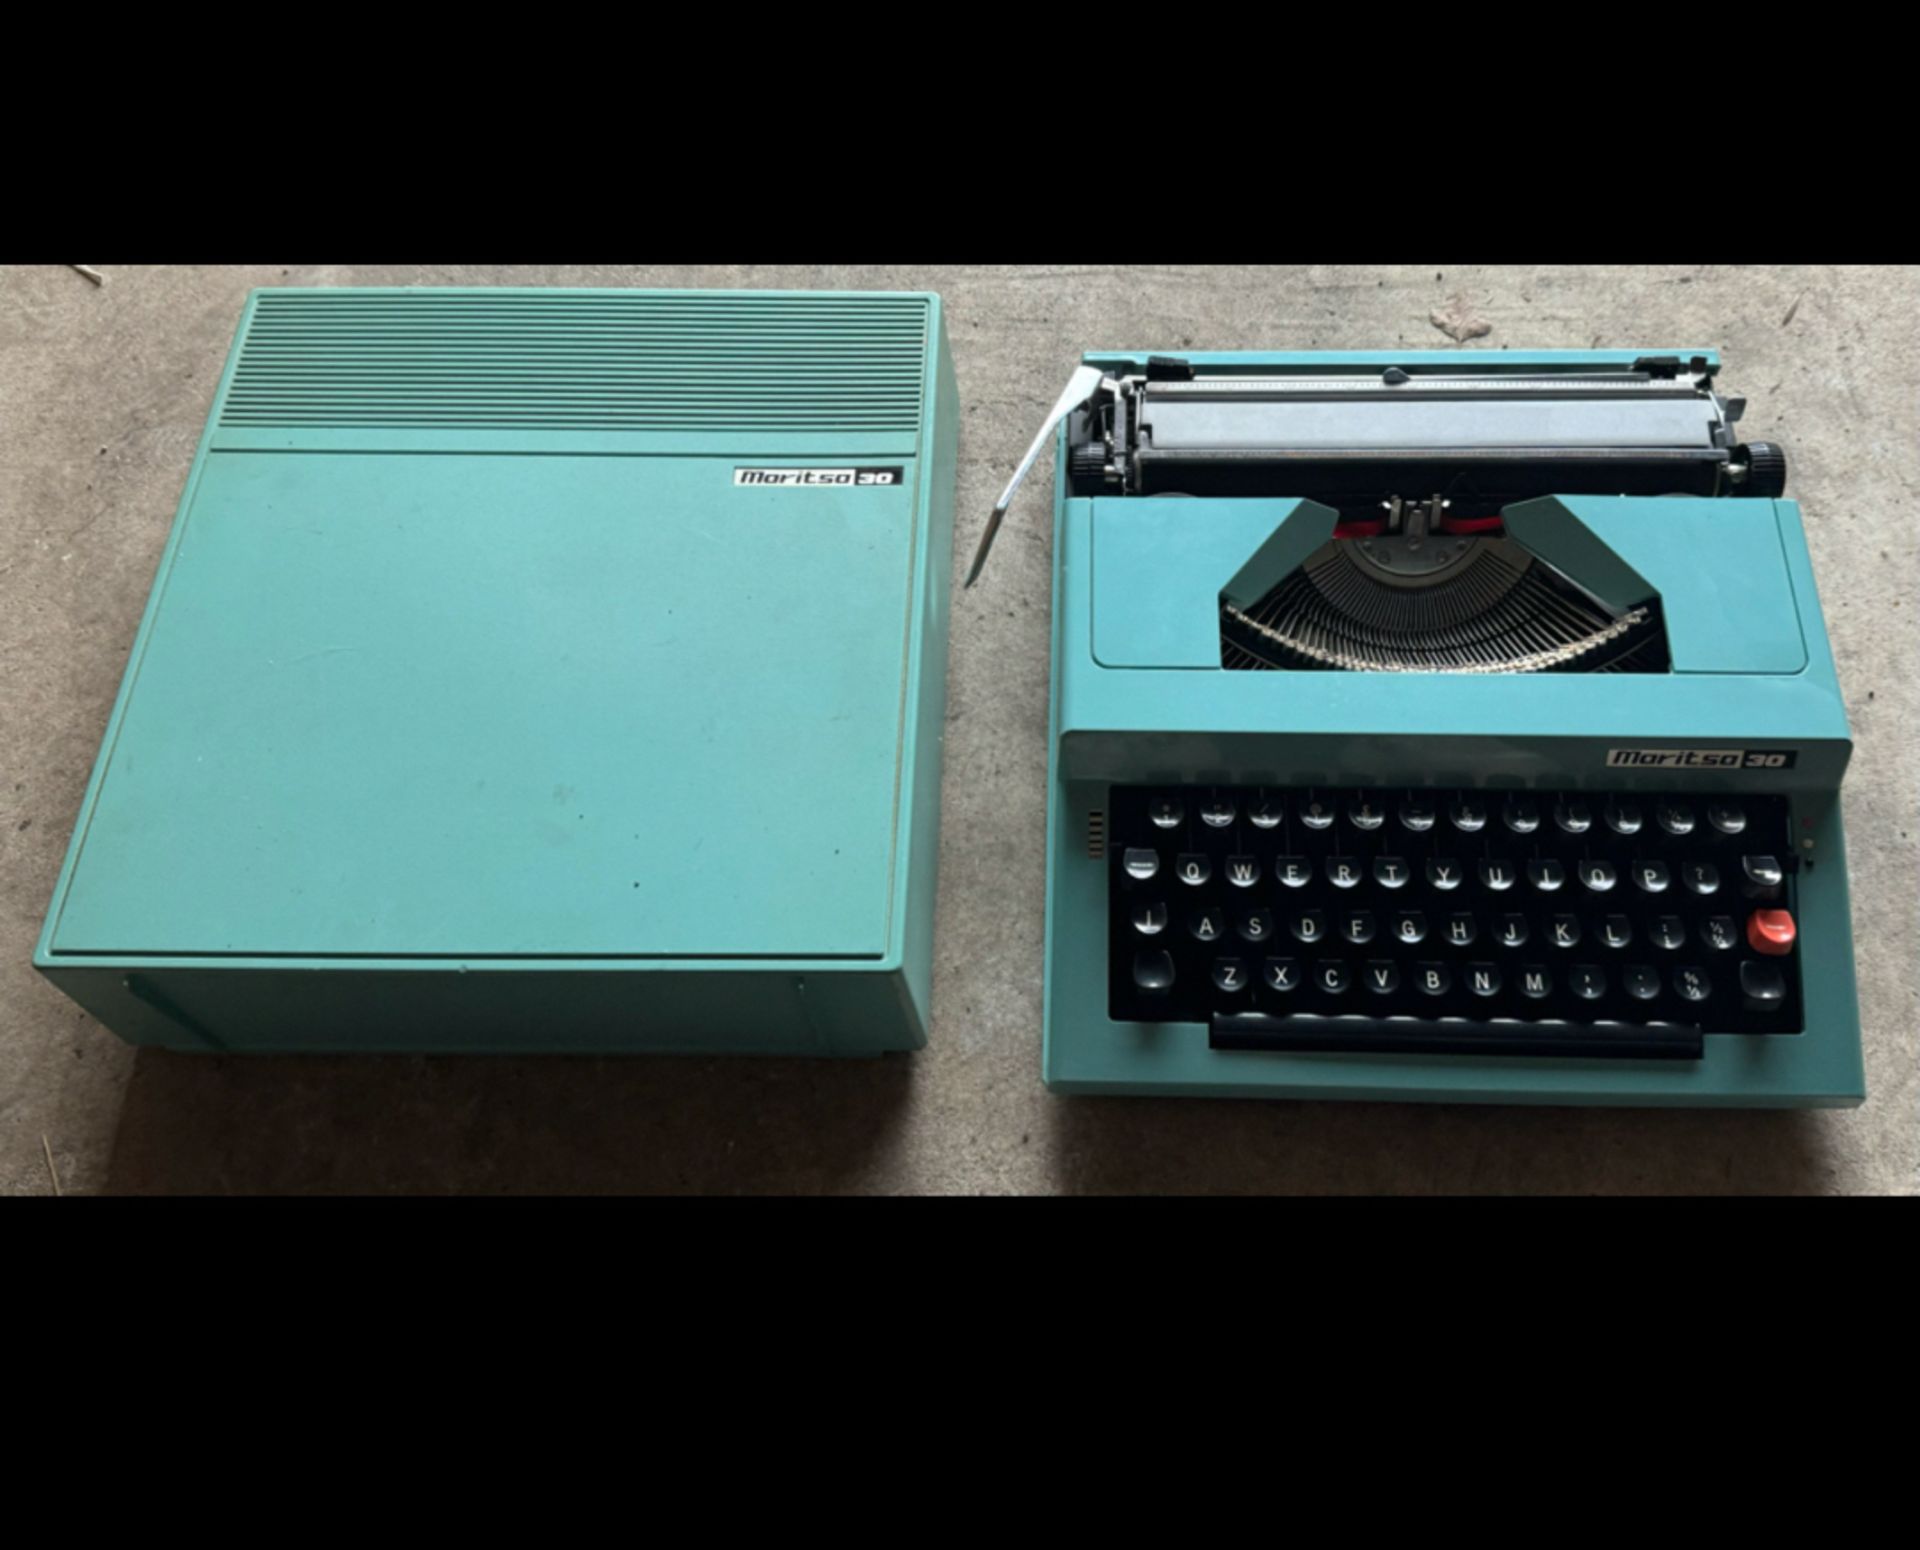 Vintage Blue Maritsa 30 Portable Typewriter in Case - Workshop Find, Untested